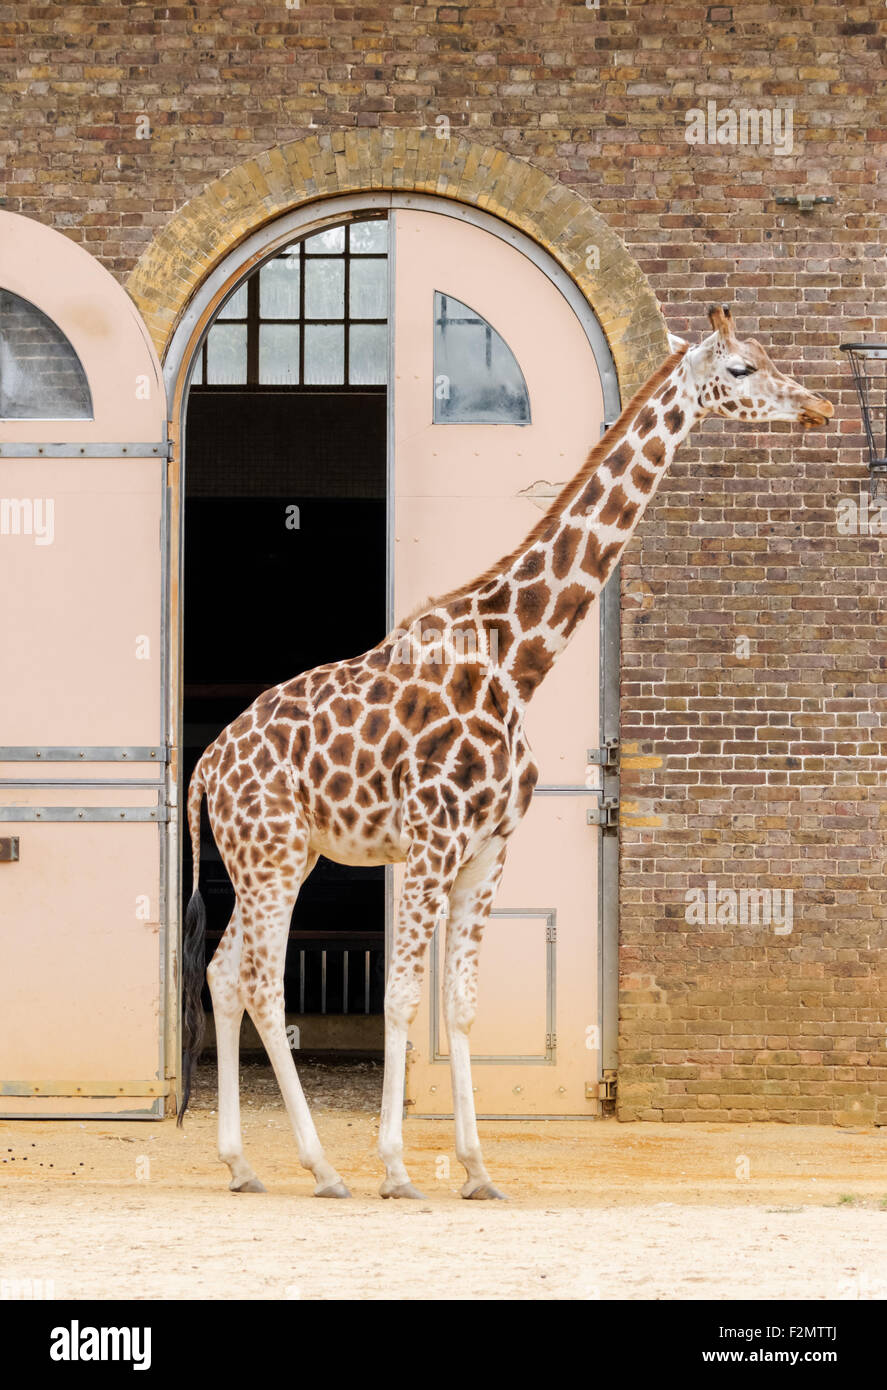 Girafe au ZSL Zoo de Londres, Londres Angleterre Royaume-Uni UK Banque D'Images